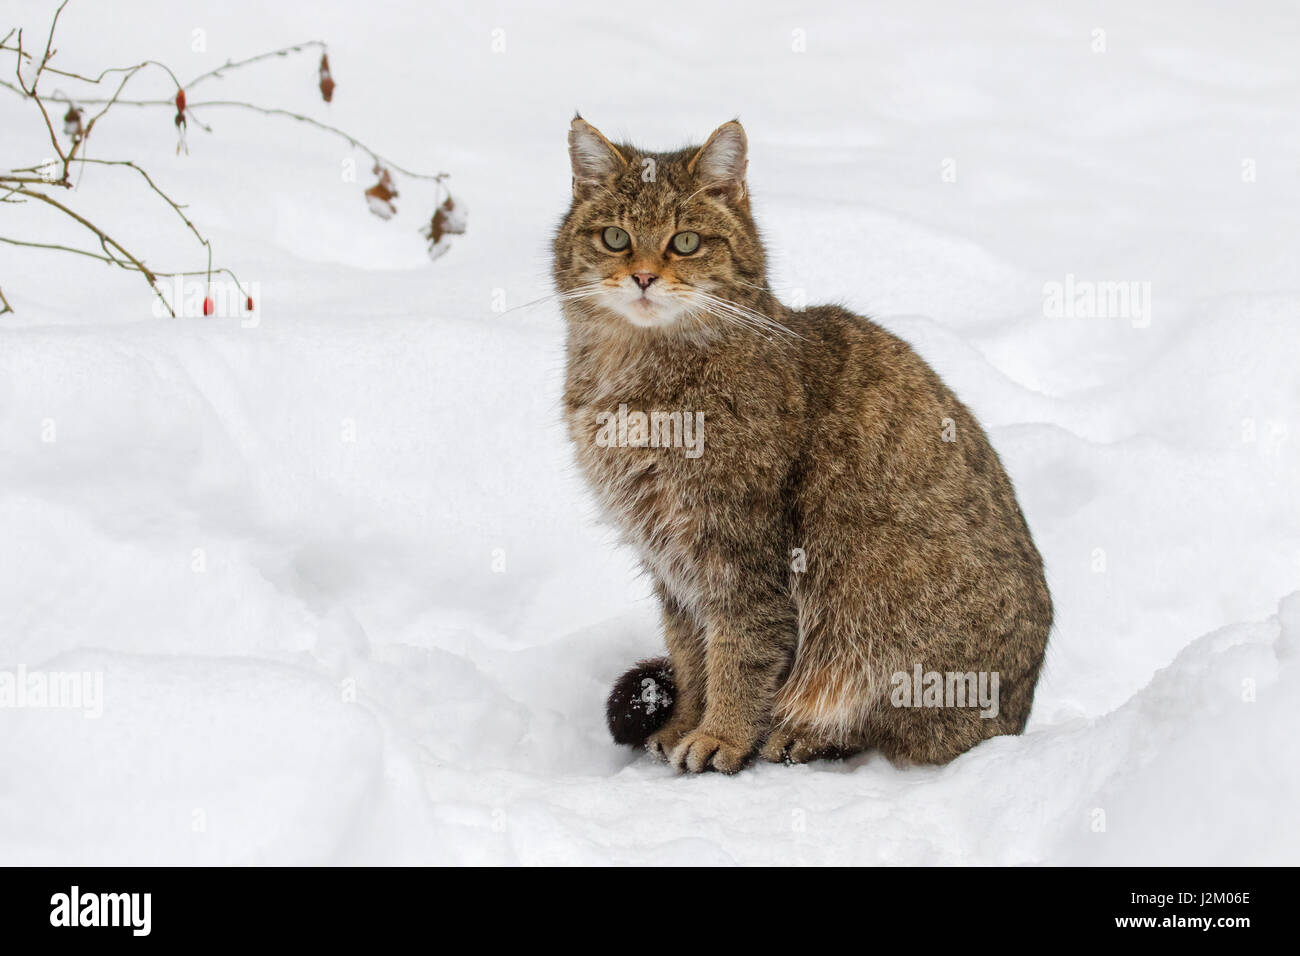 Unione gatto selvatico (Felis silvestris silvestris) seduta nella neve in inverno Foto Stock